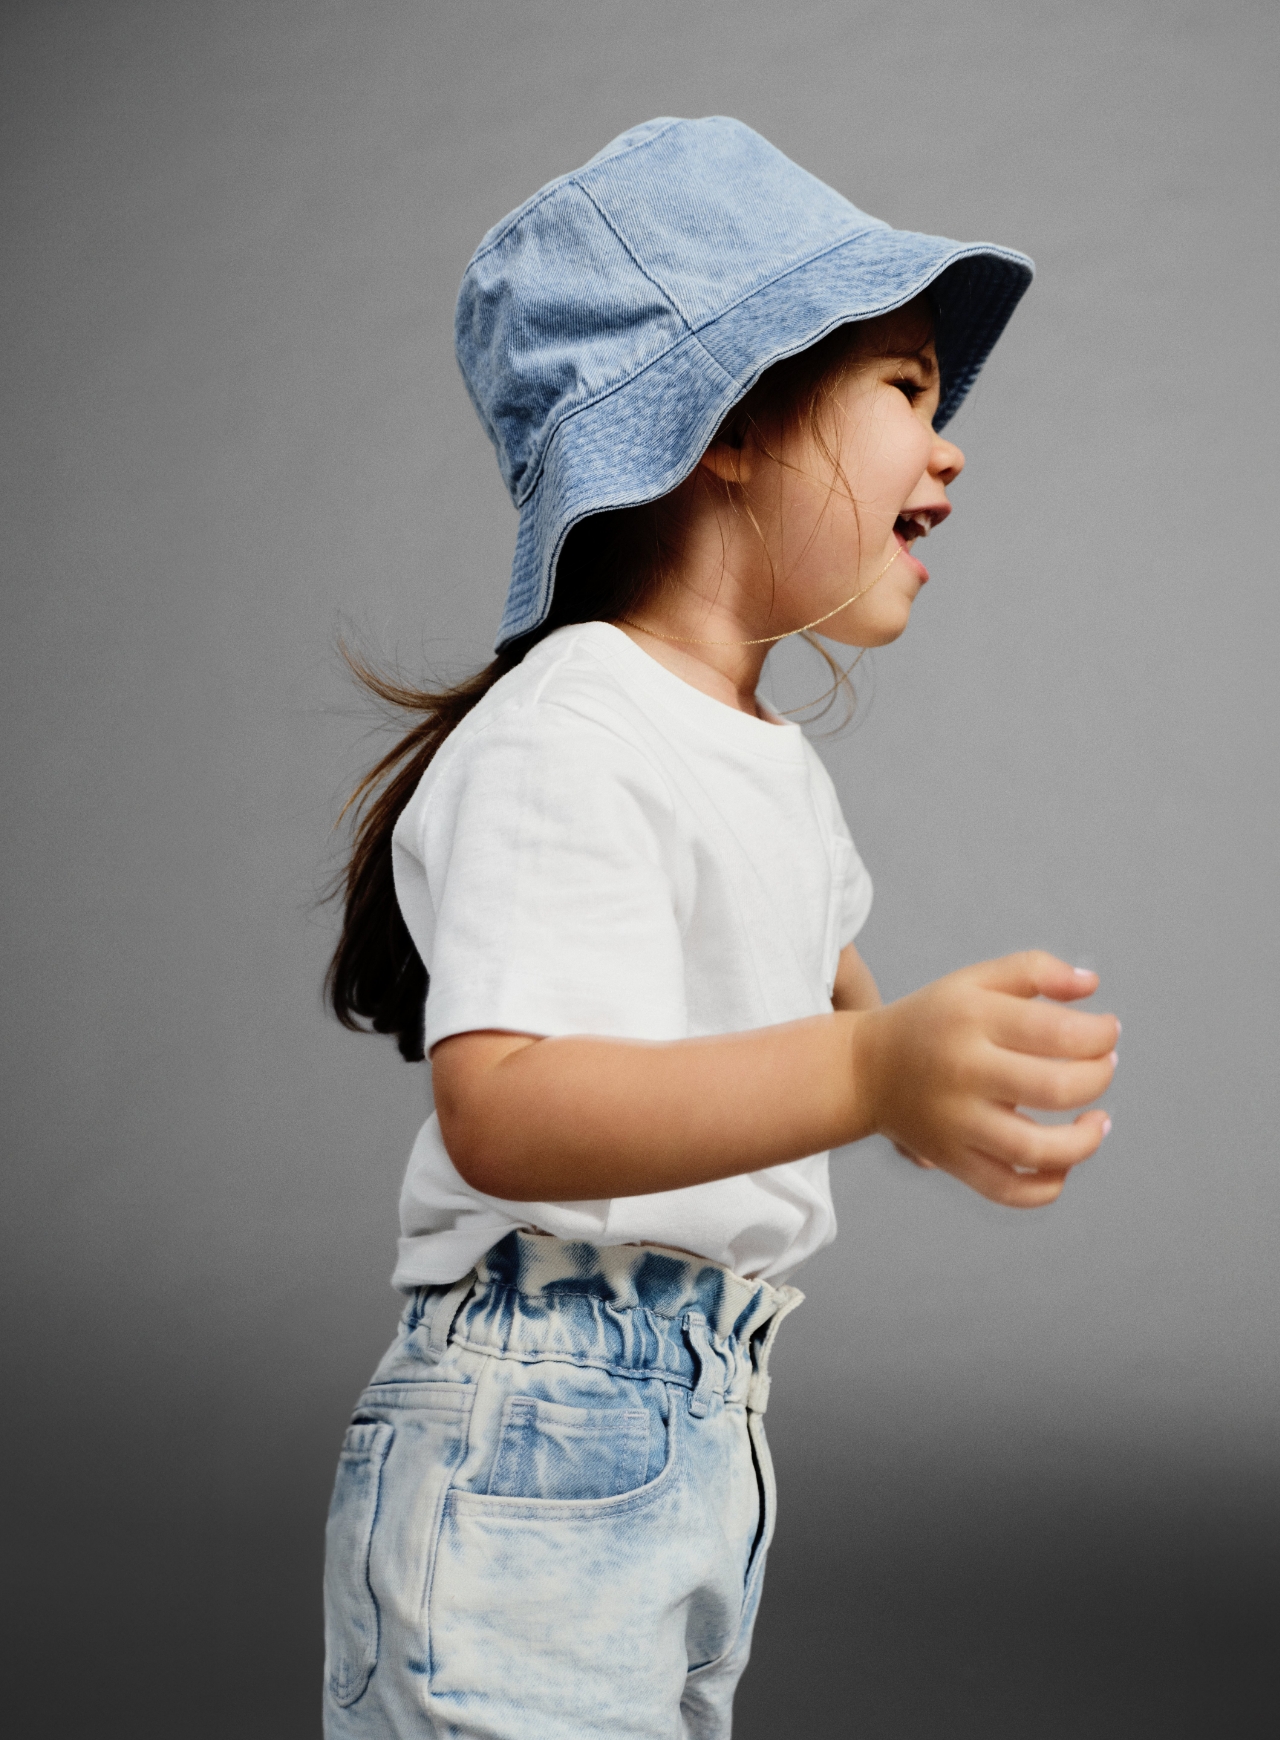 Shop Toddler Clothes| babyGap